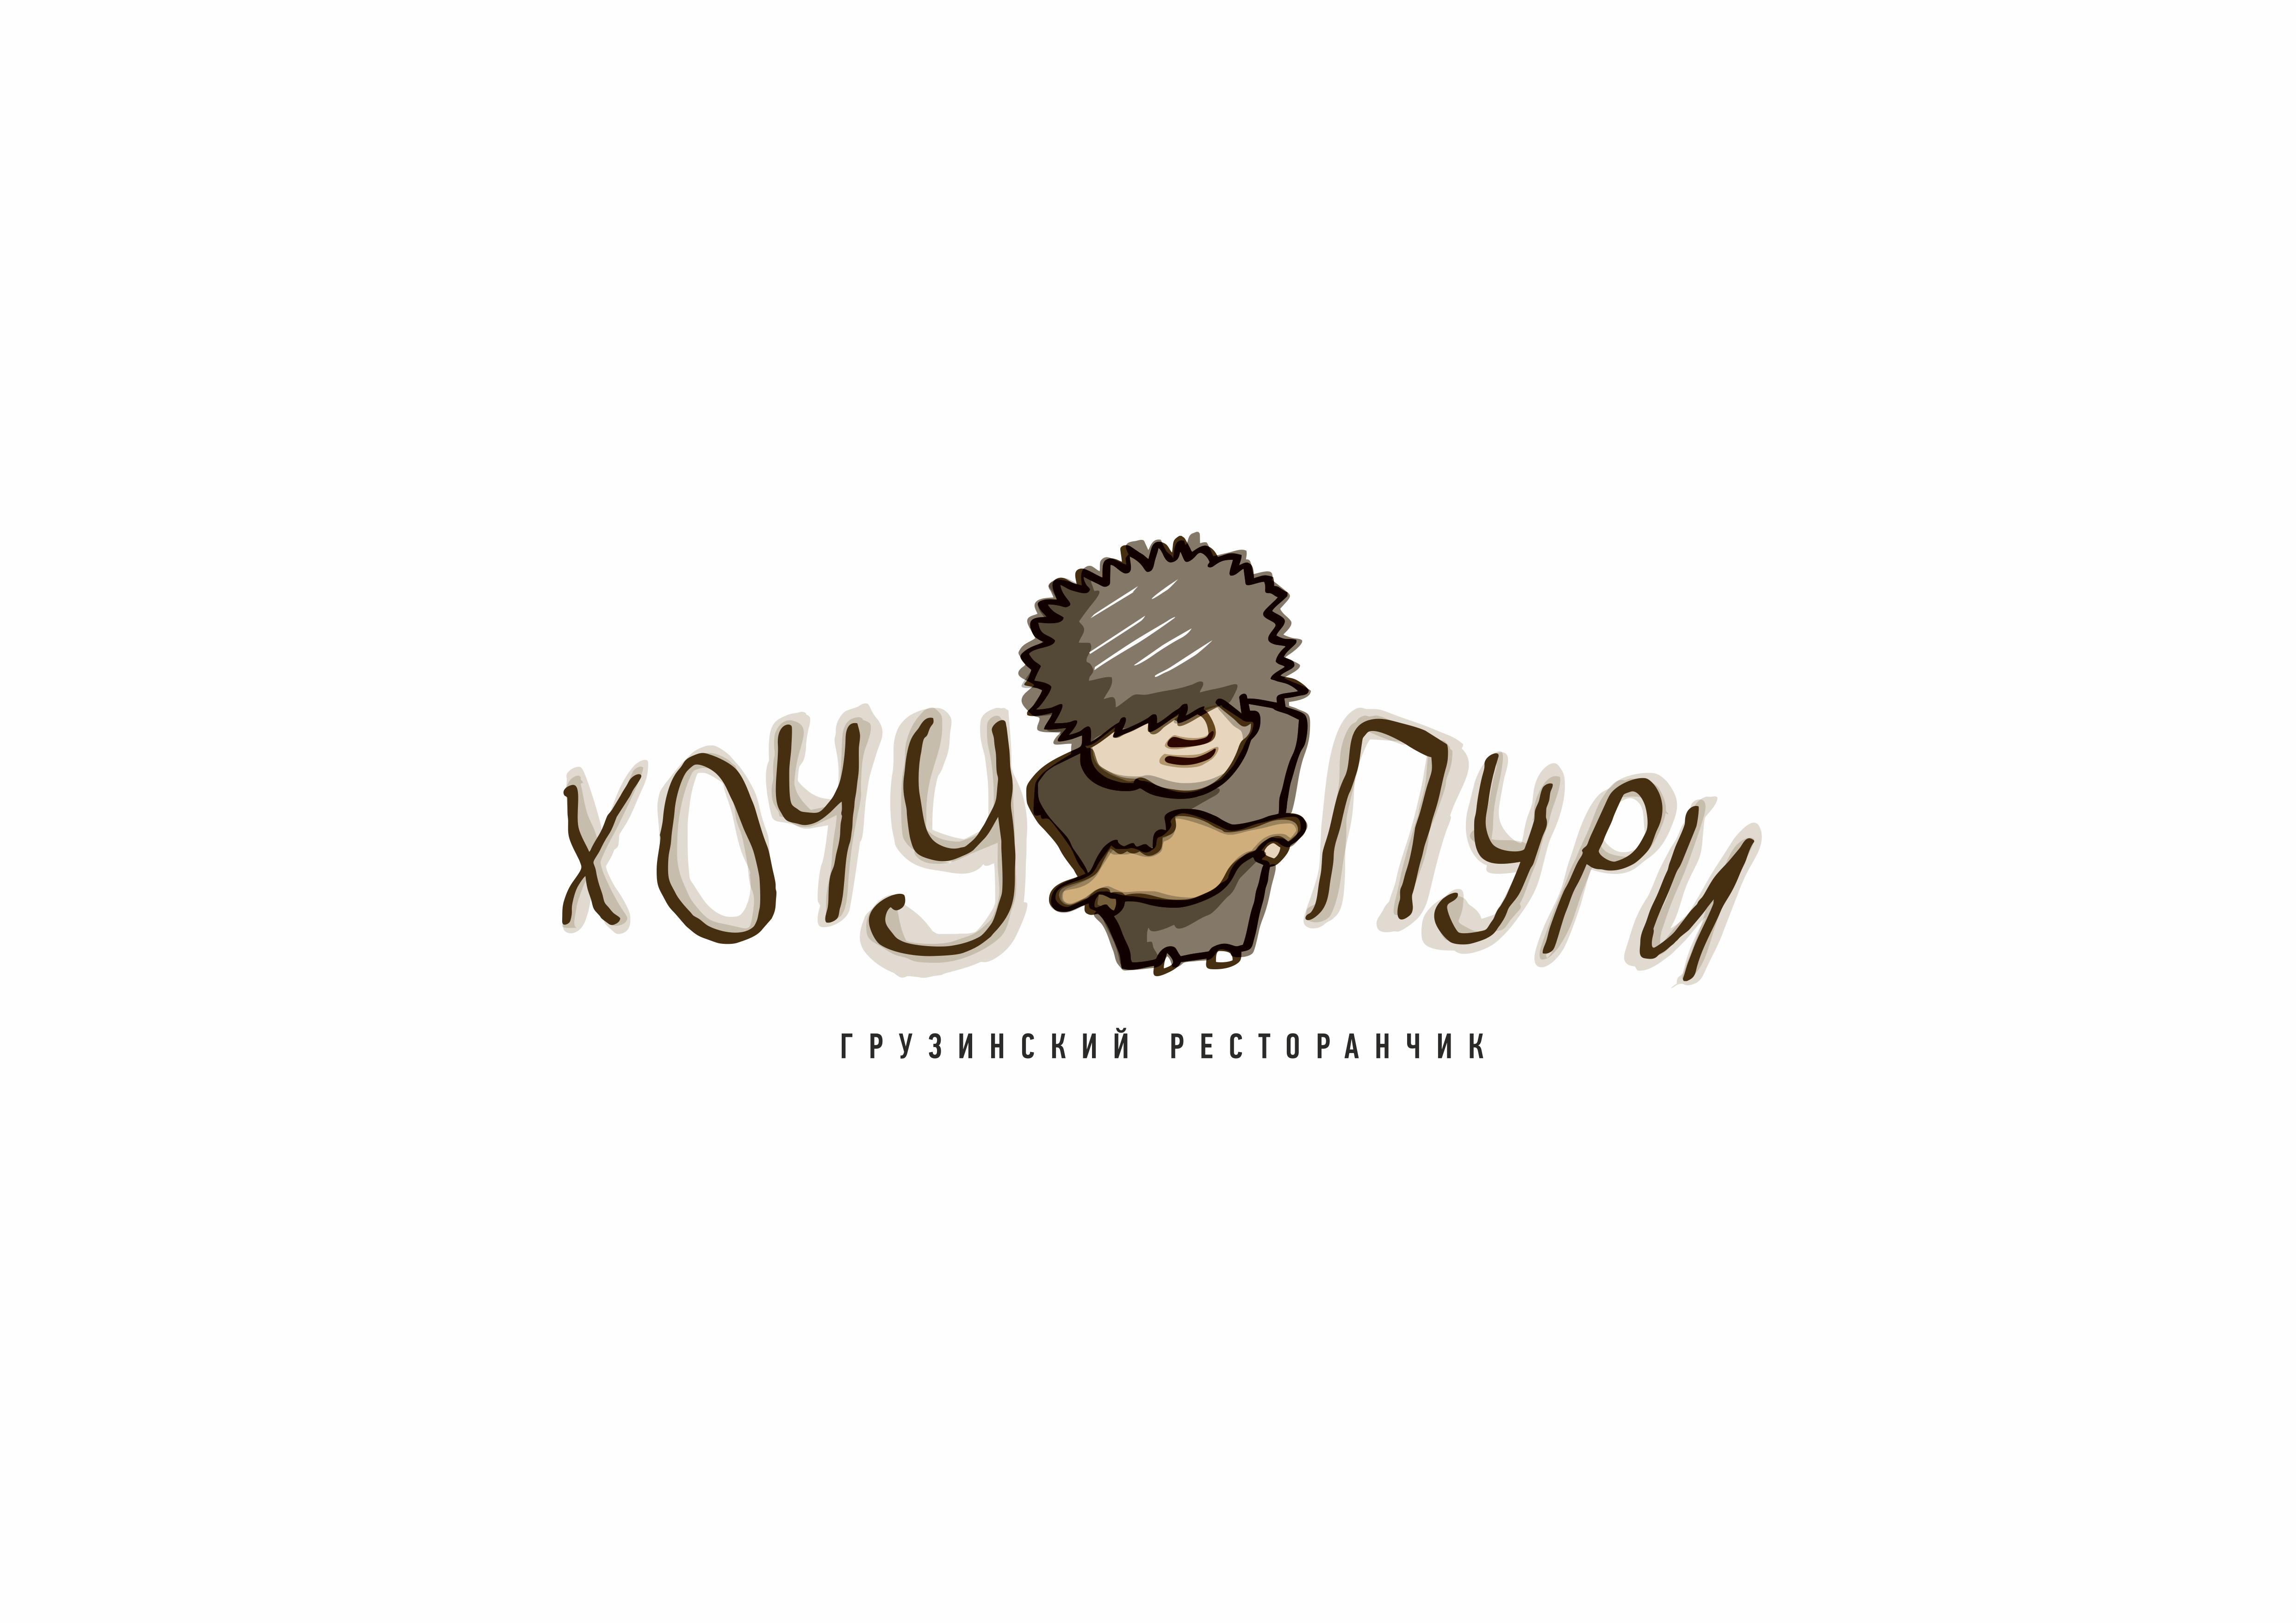 Хочу пури тургенева. Логотип ресторана. Логотип кафе. Логотип грузинского кафе. Грузинский ресторан лого.